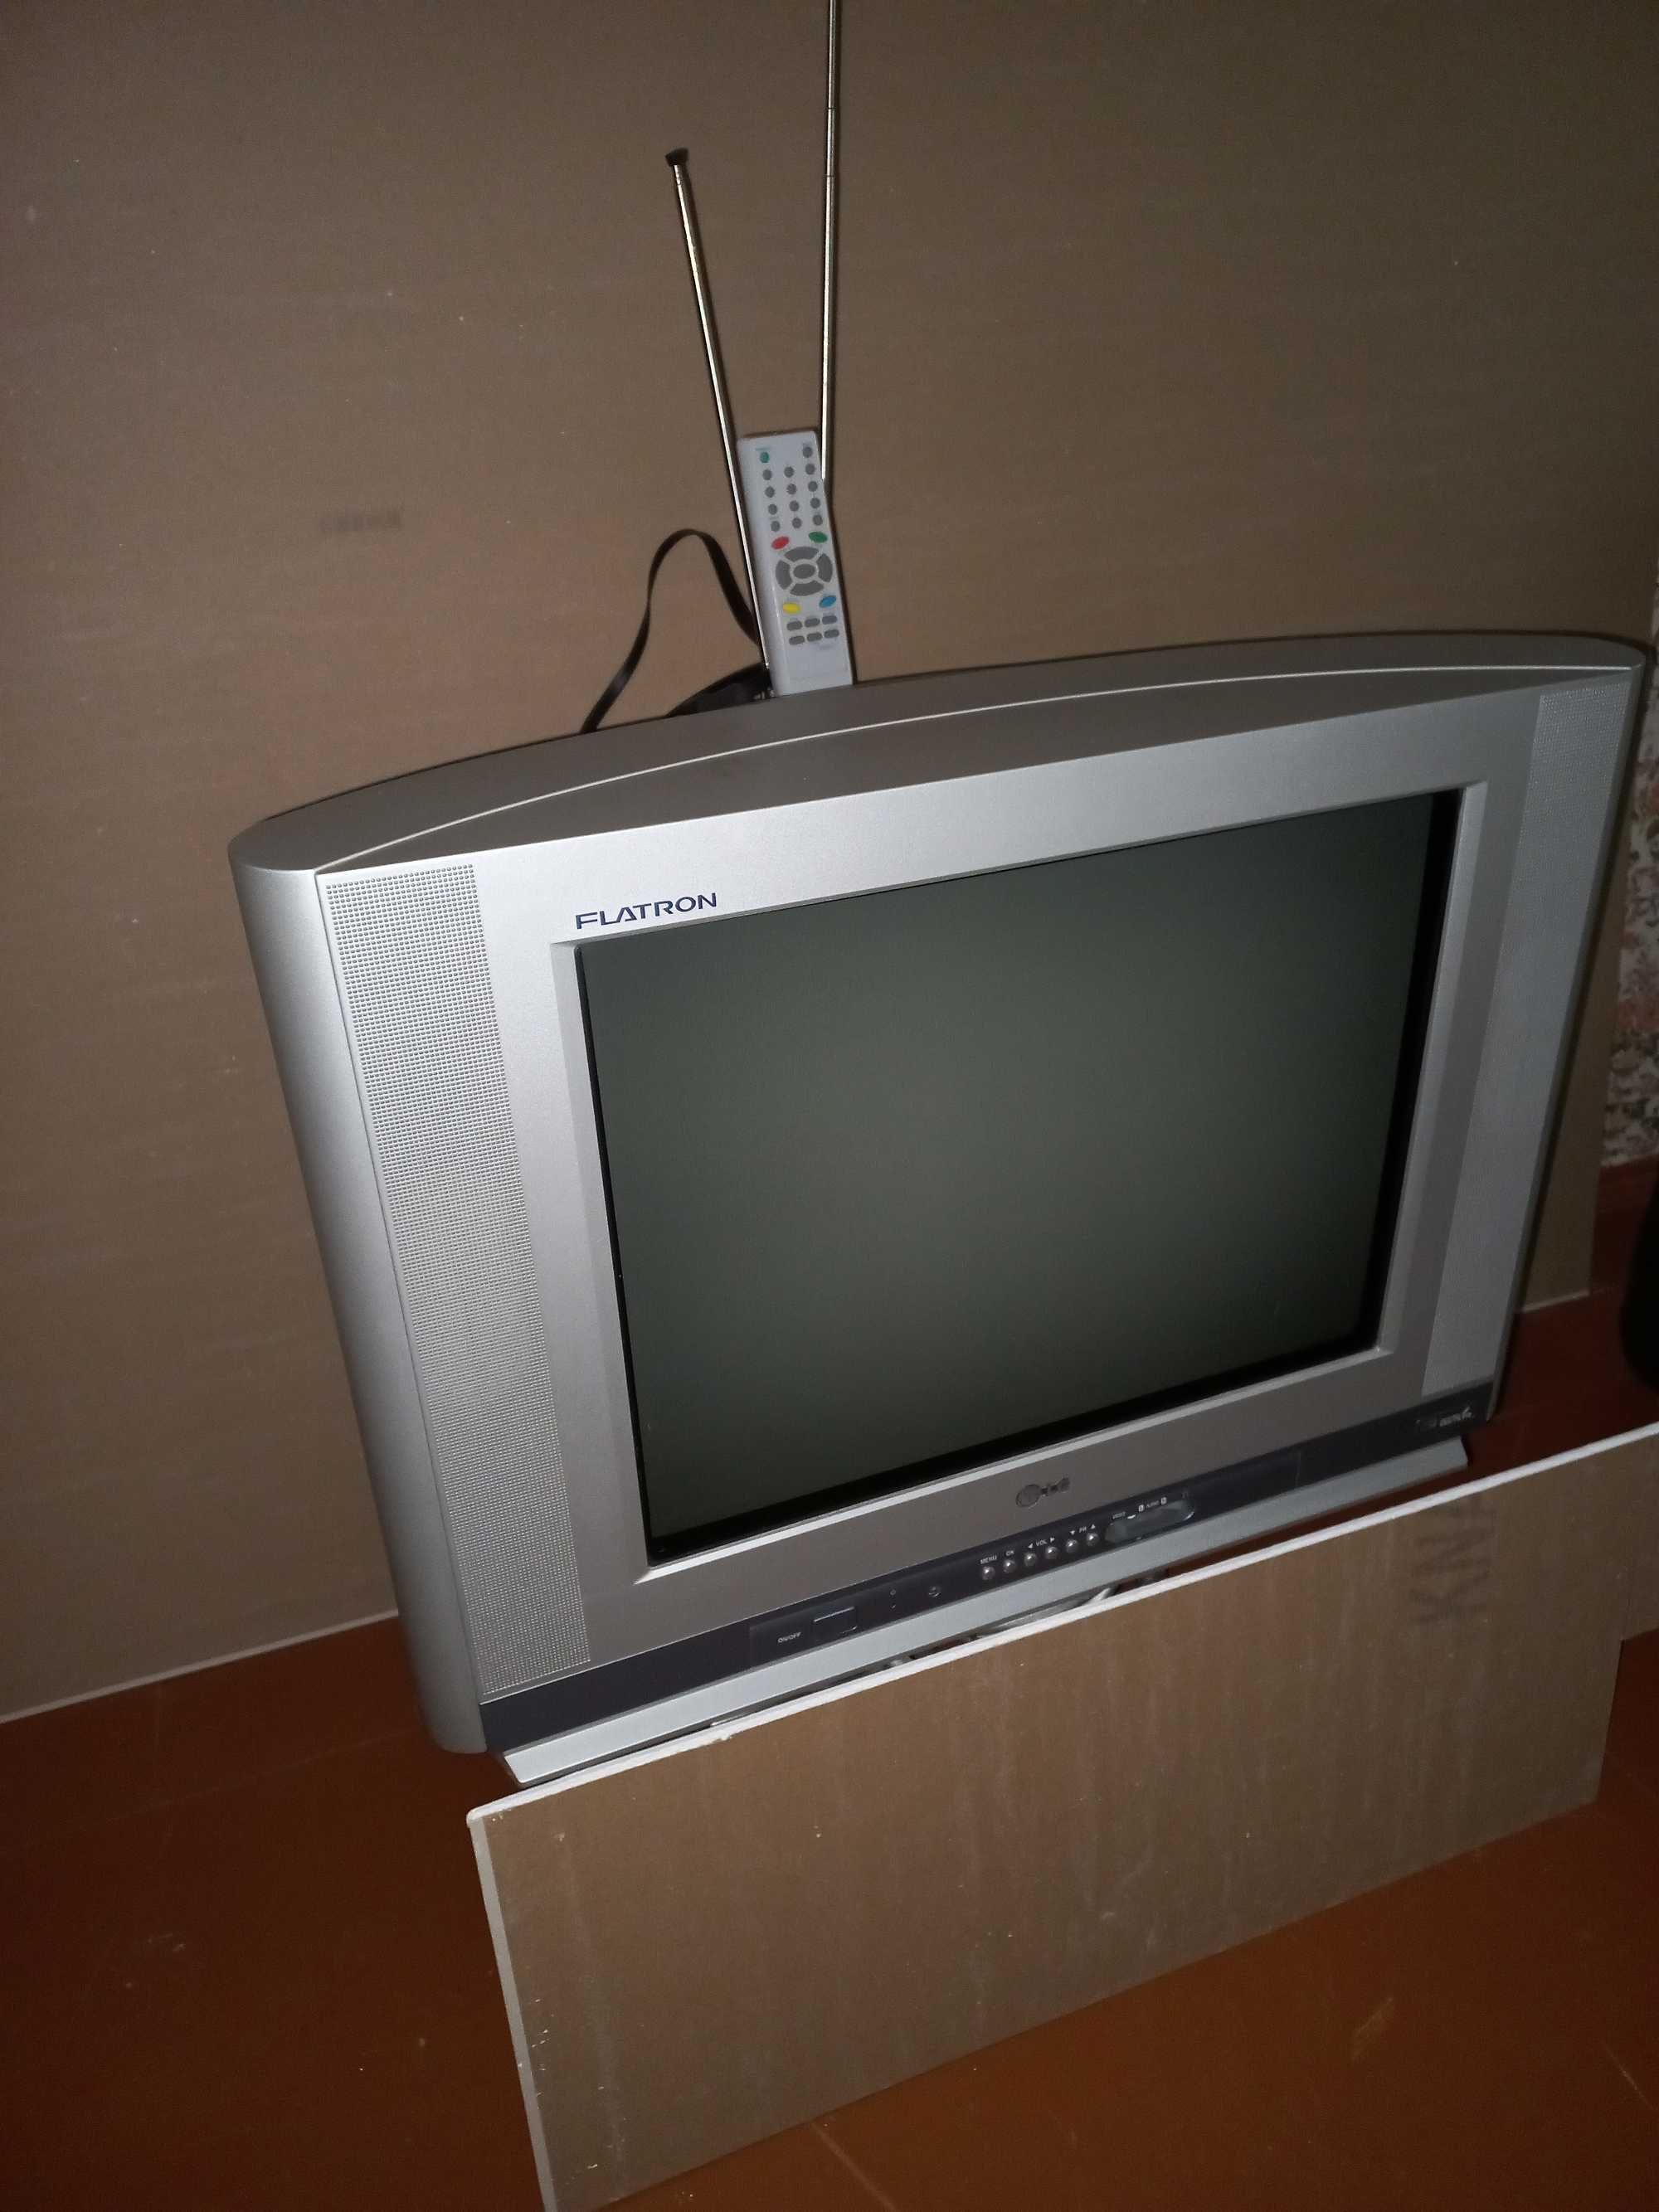 Продам телевизор LG, б/у,в рабочем состоянии.Диагональ 21 дюйм.